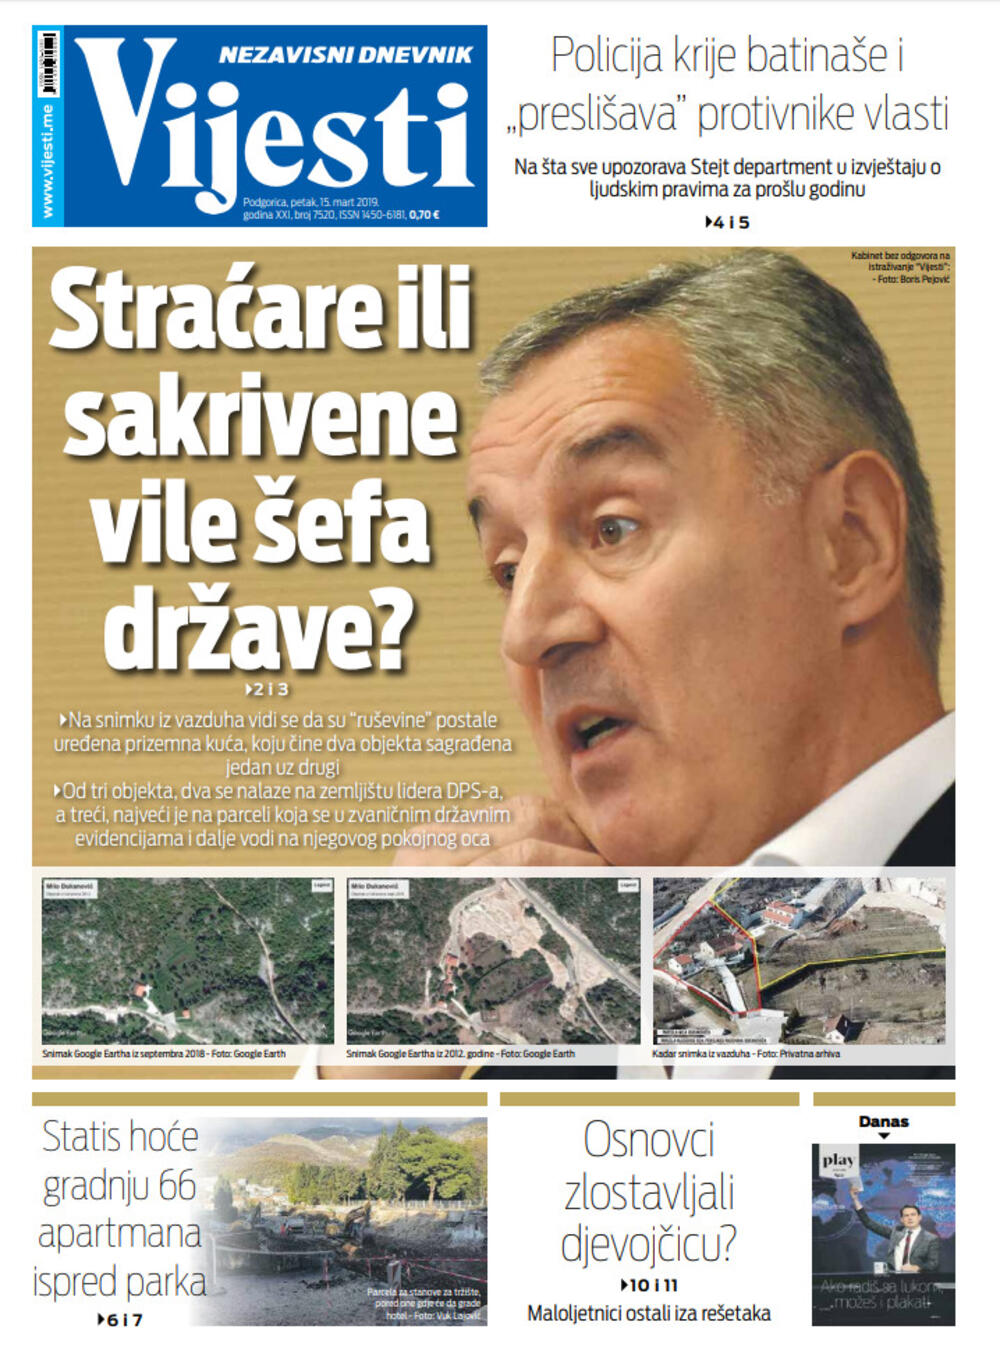 Naslovna strana "Vijesti" za 15. mart, Foto: "Vijesti"